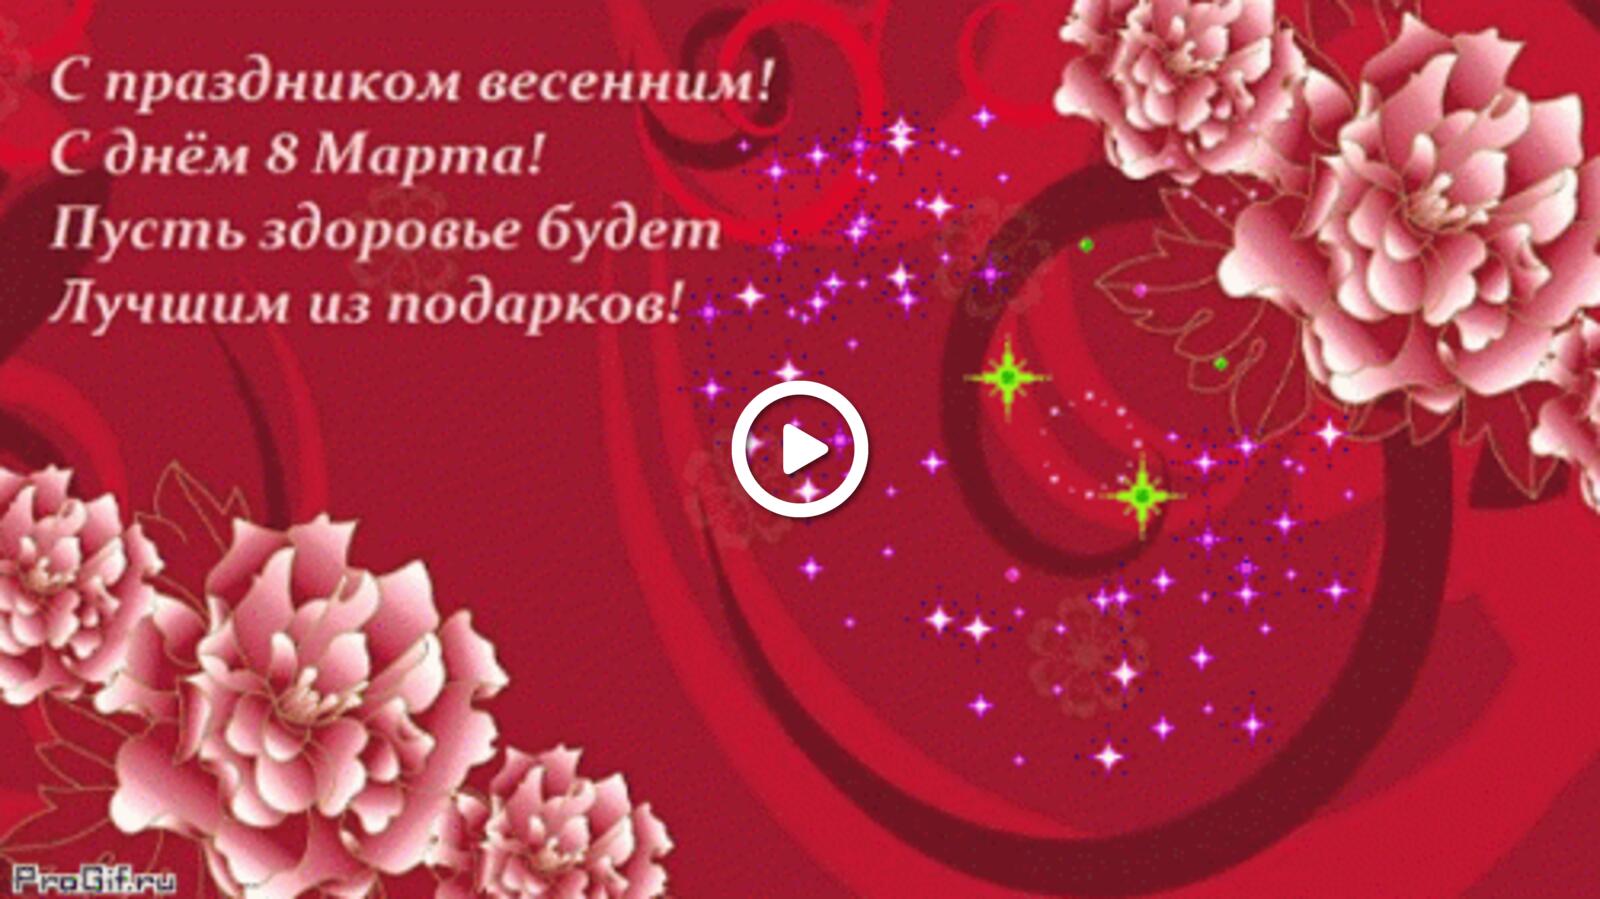 Открытка на тему цветы текст с праздником весенним с днём 8 марта пусть здоровье будет лучшим из подарков бесплатно